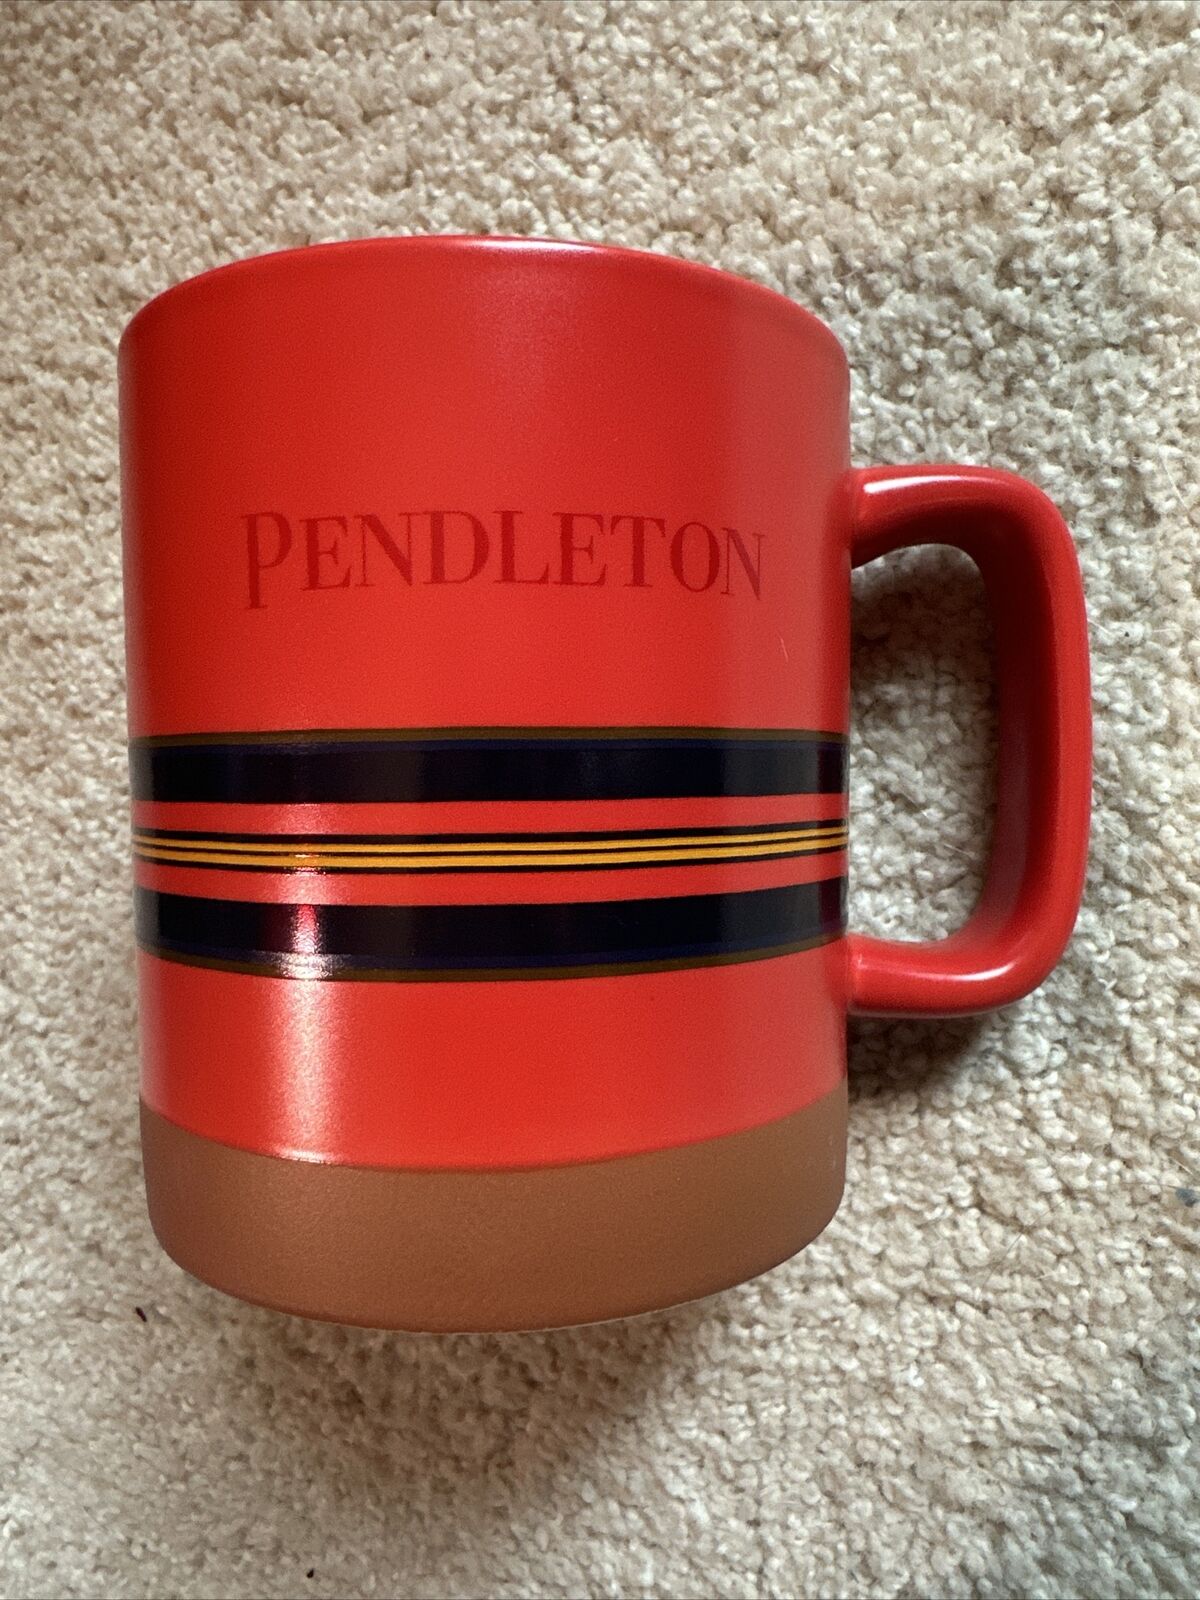 Pendleton National Parks Collectible Mug Red (Shelter Bay) 18 Oz. Woolen Mills